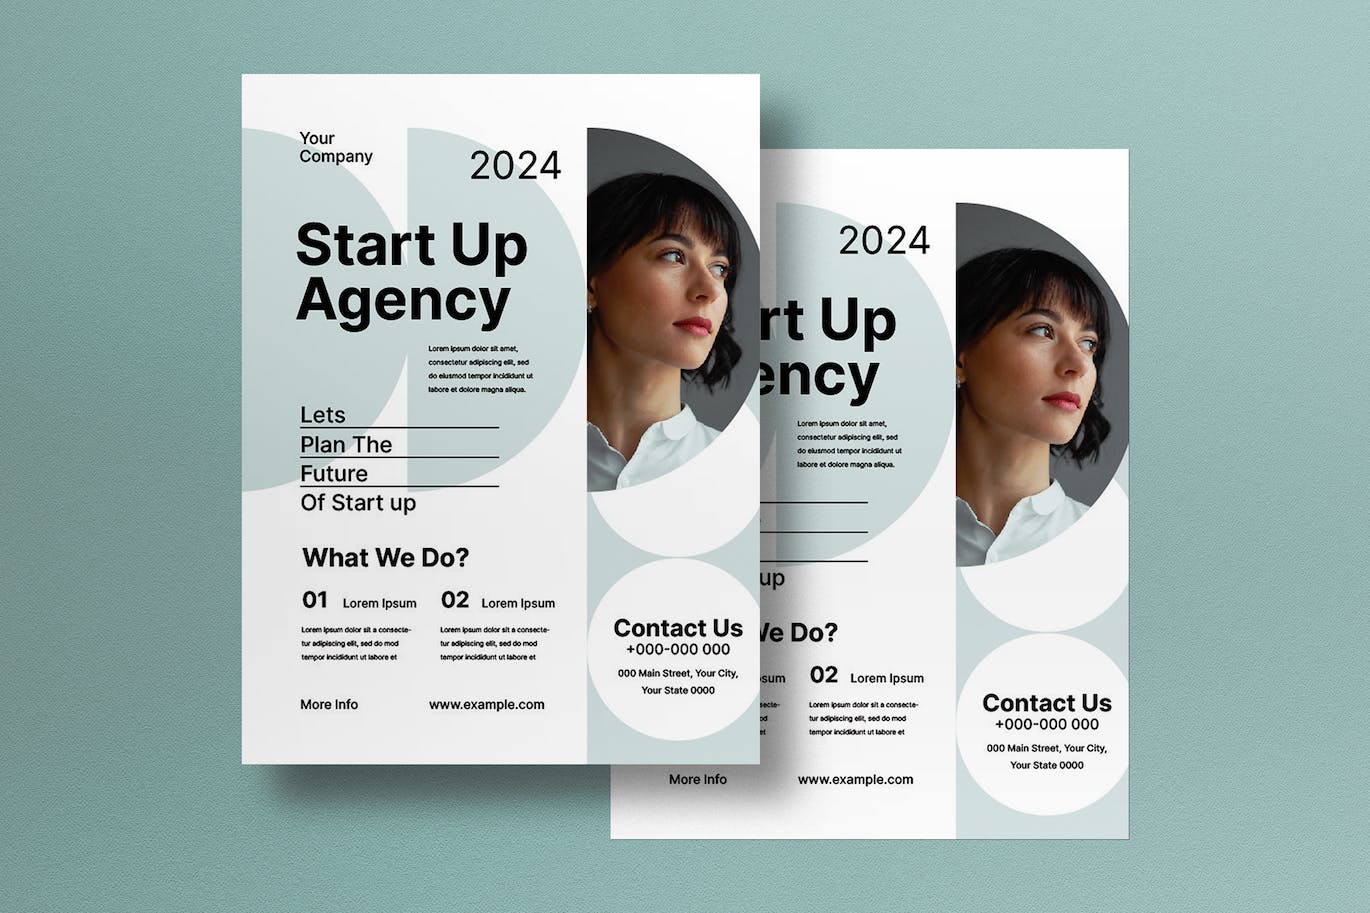 白色现代简约风格创业机构传单模板下载 White Modern Minimalist Start Up Agency Flyer 设计素材 第1张